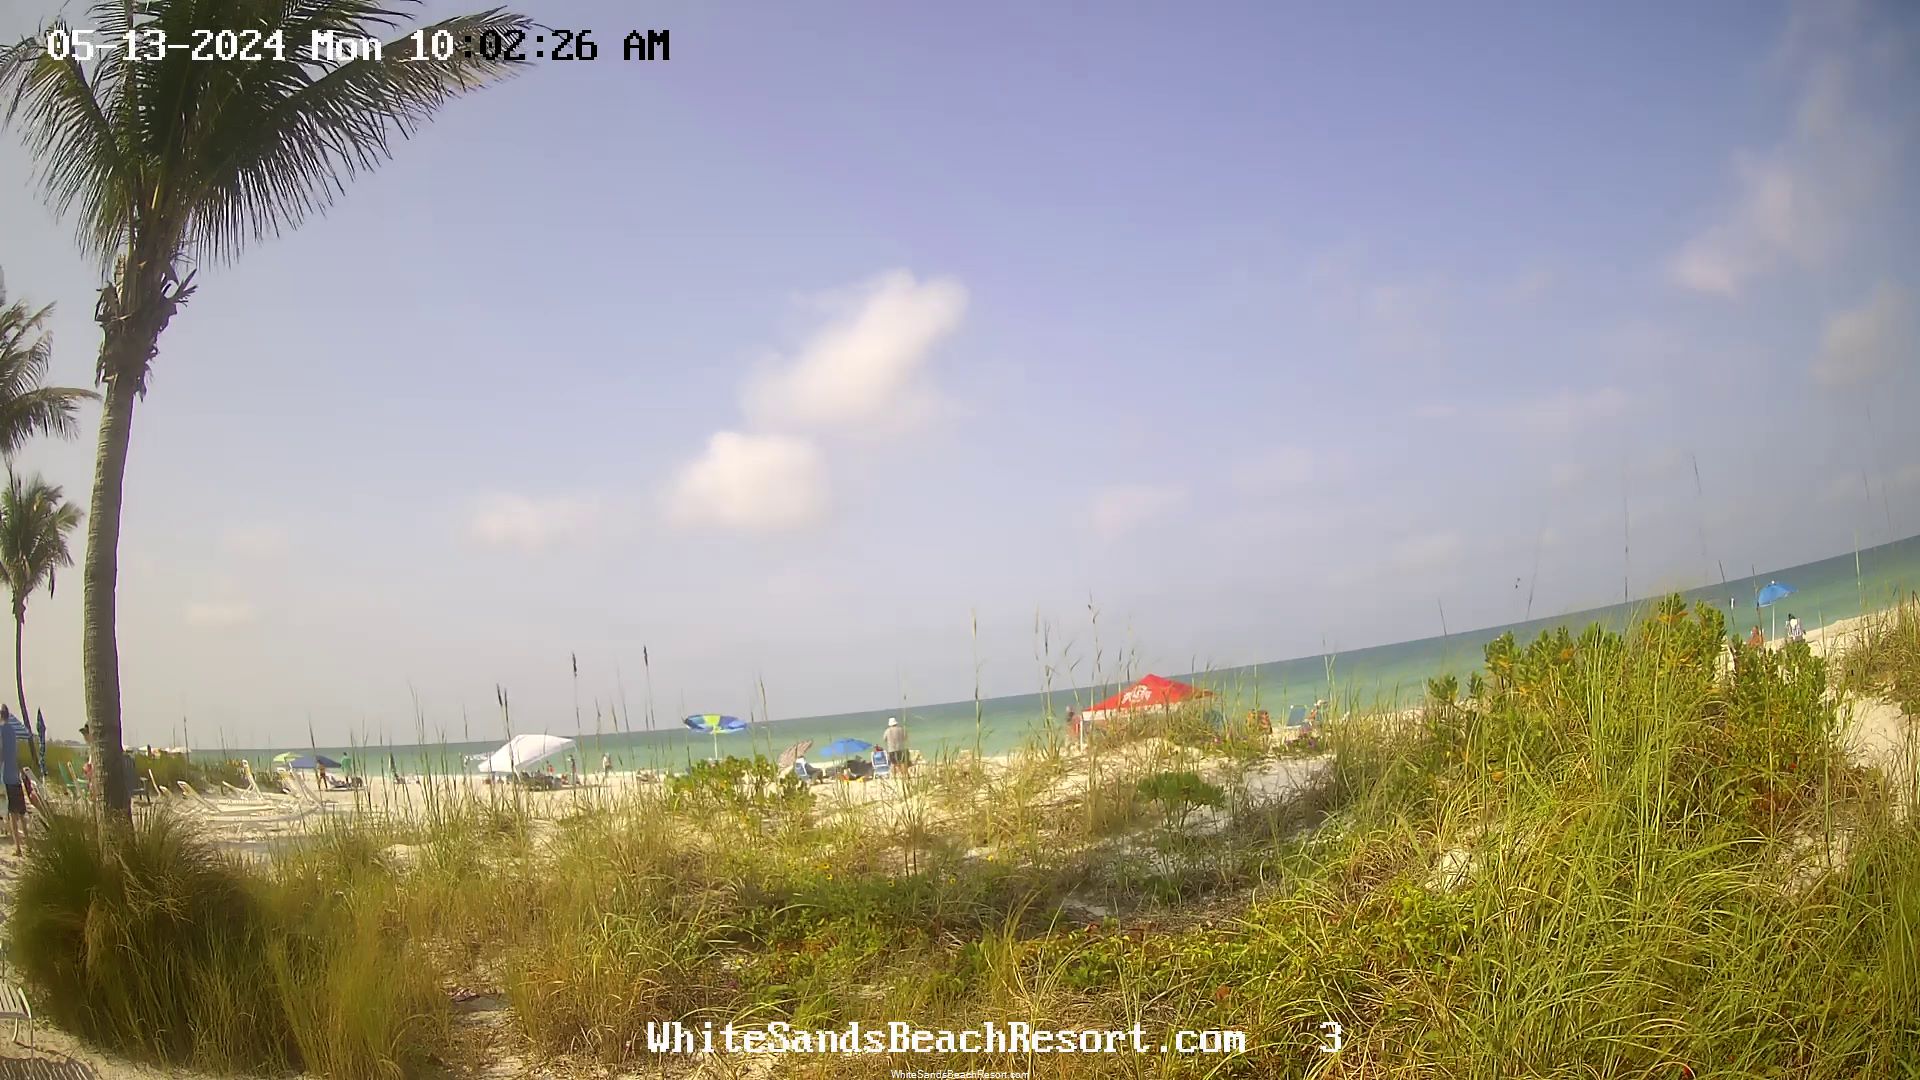 Holmes Beach, Florida Vie. 09:56